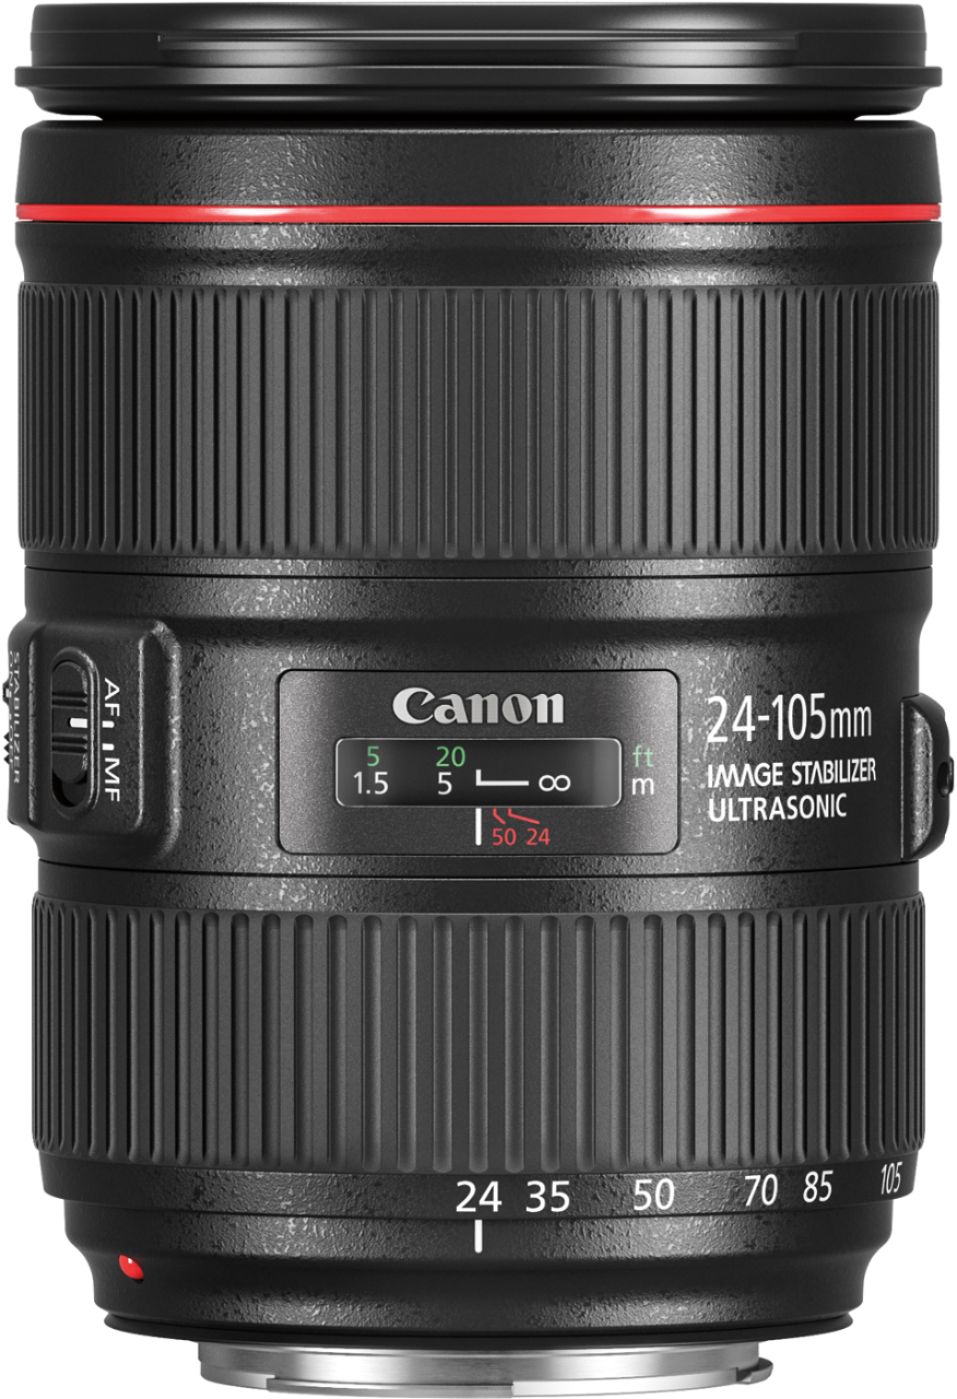 カメラ レンズ(ズーム) Canon EF 24-105mm f/4L IS II USM Zoom Lens for EF-mount cameras 